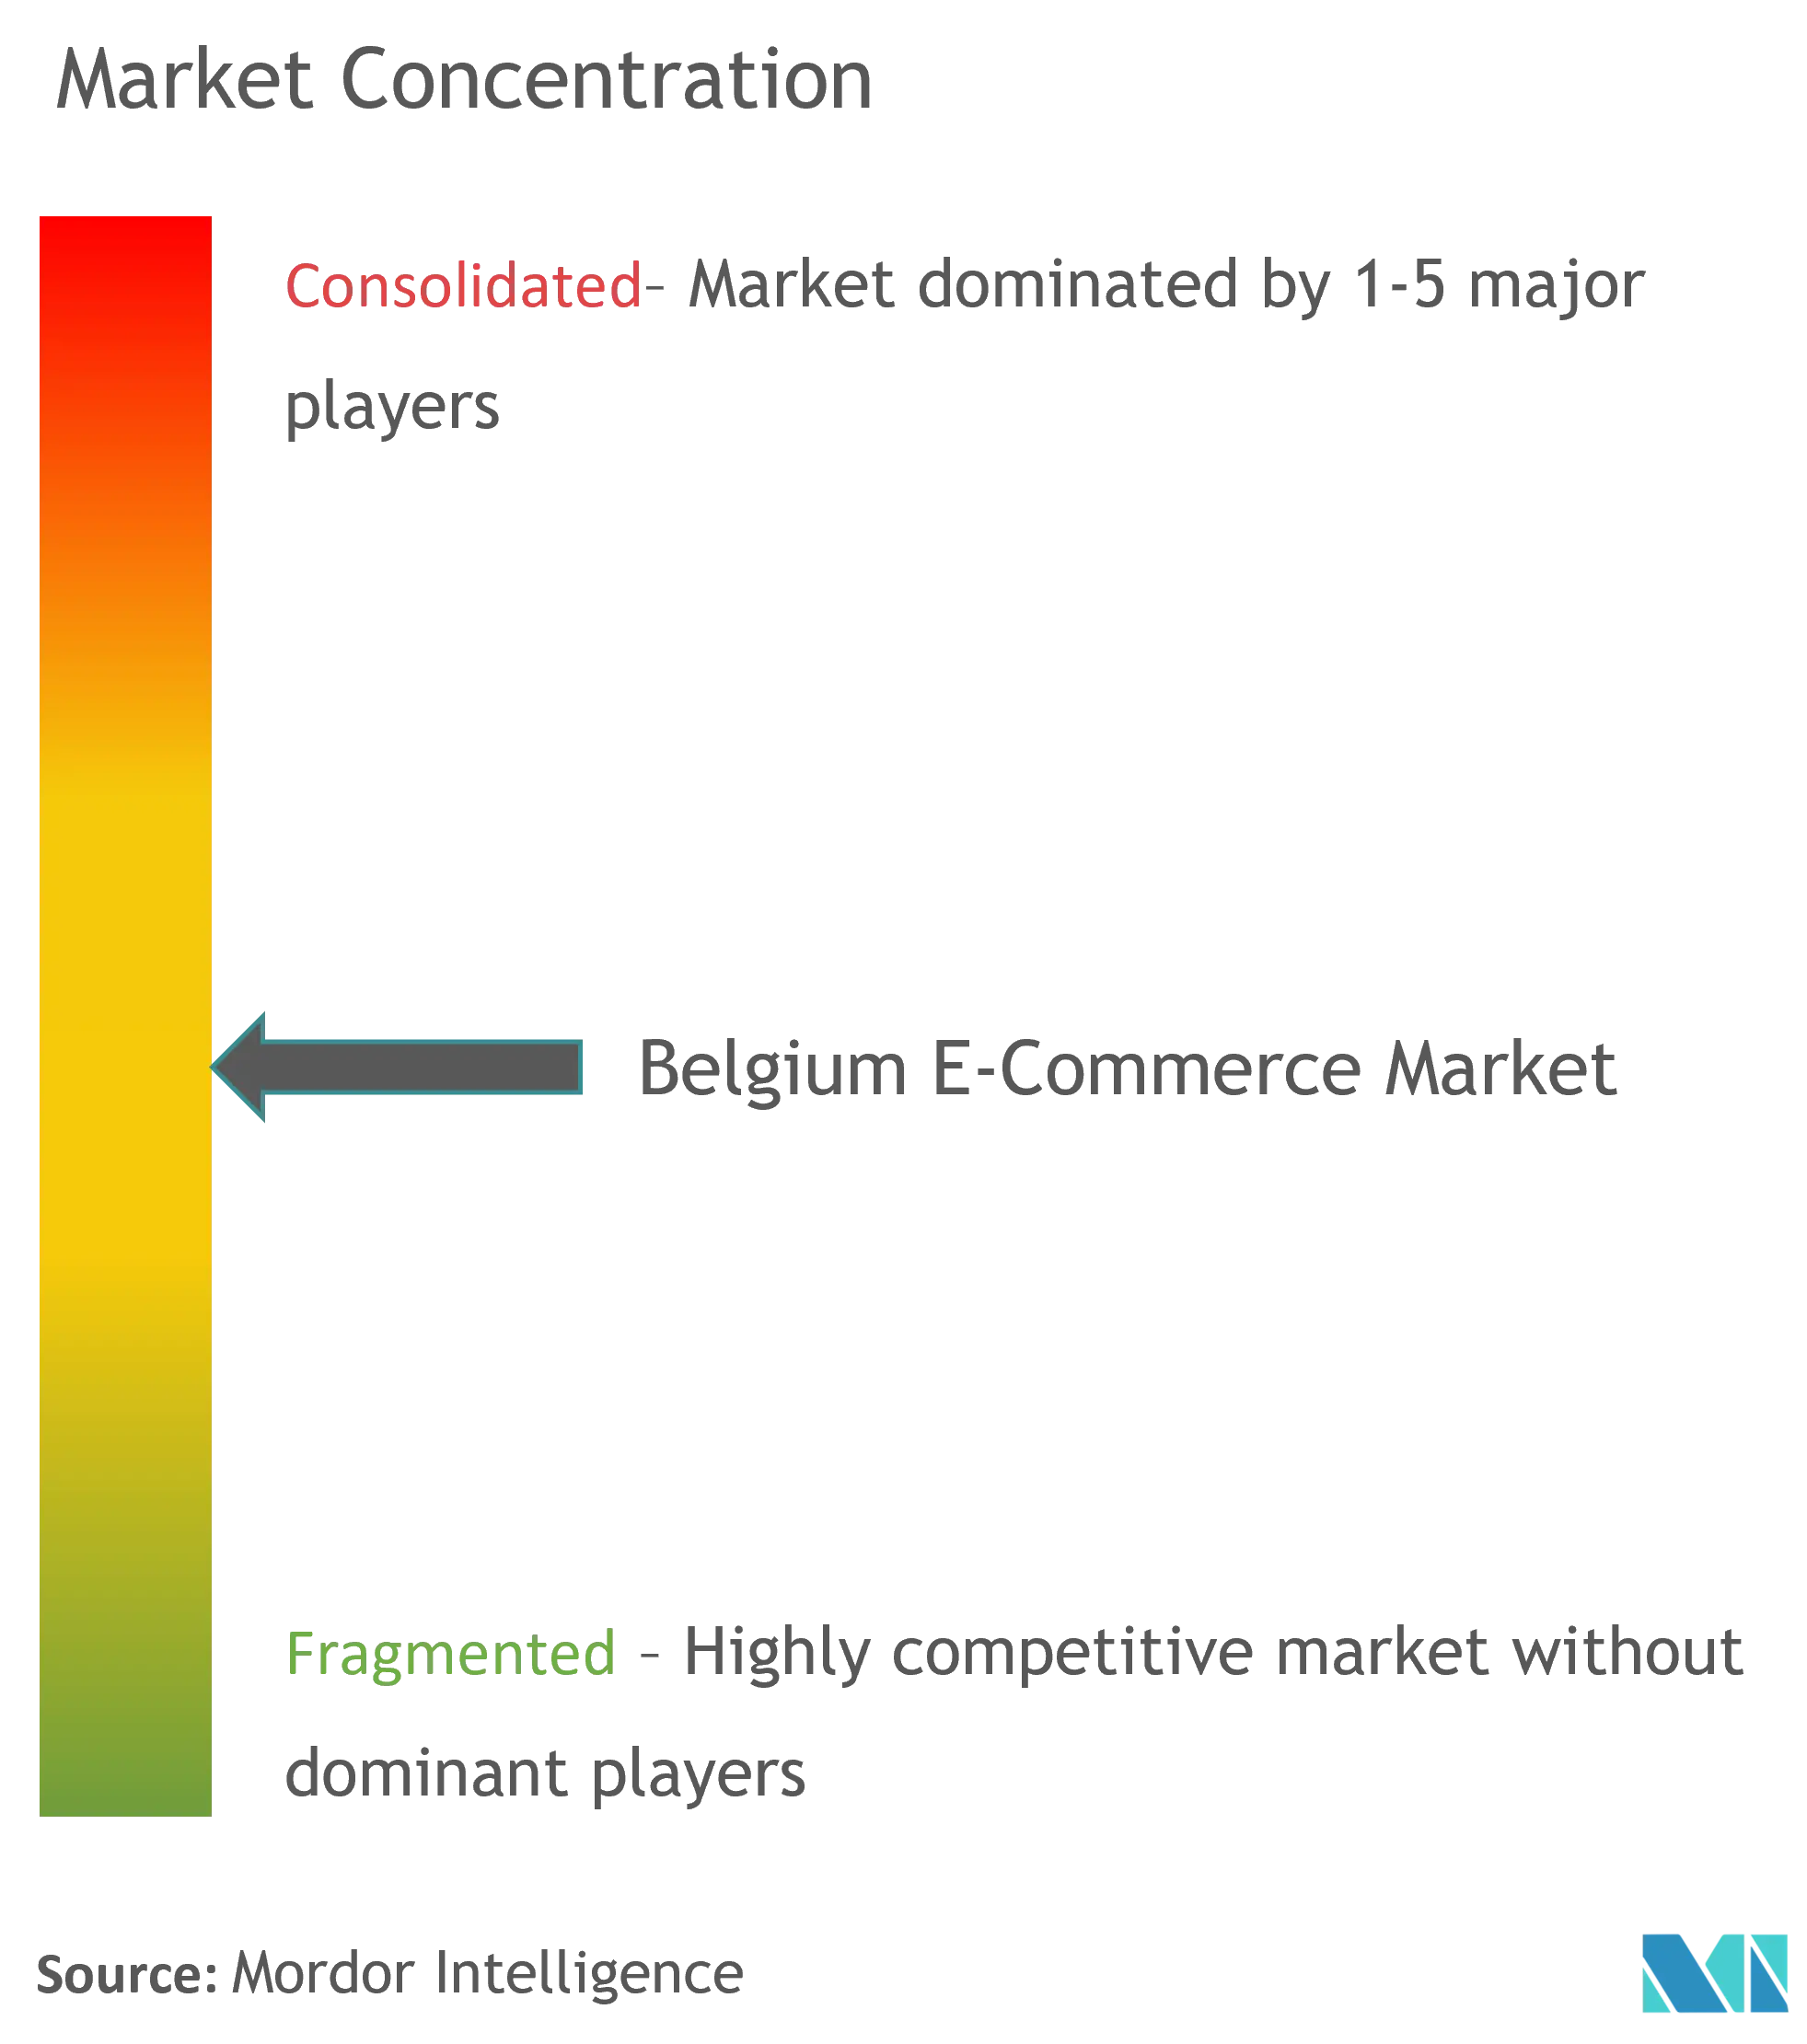 Belgium E-commerce Market Concentration